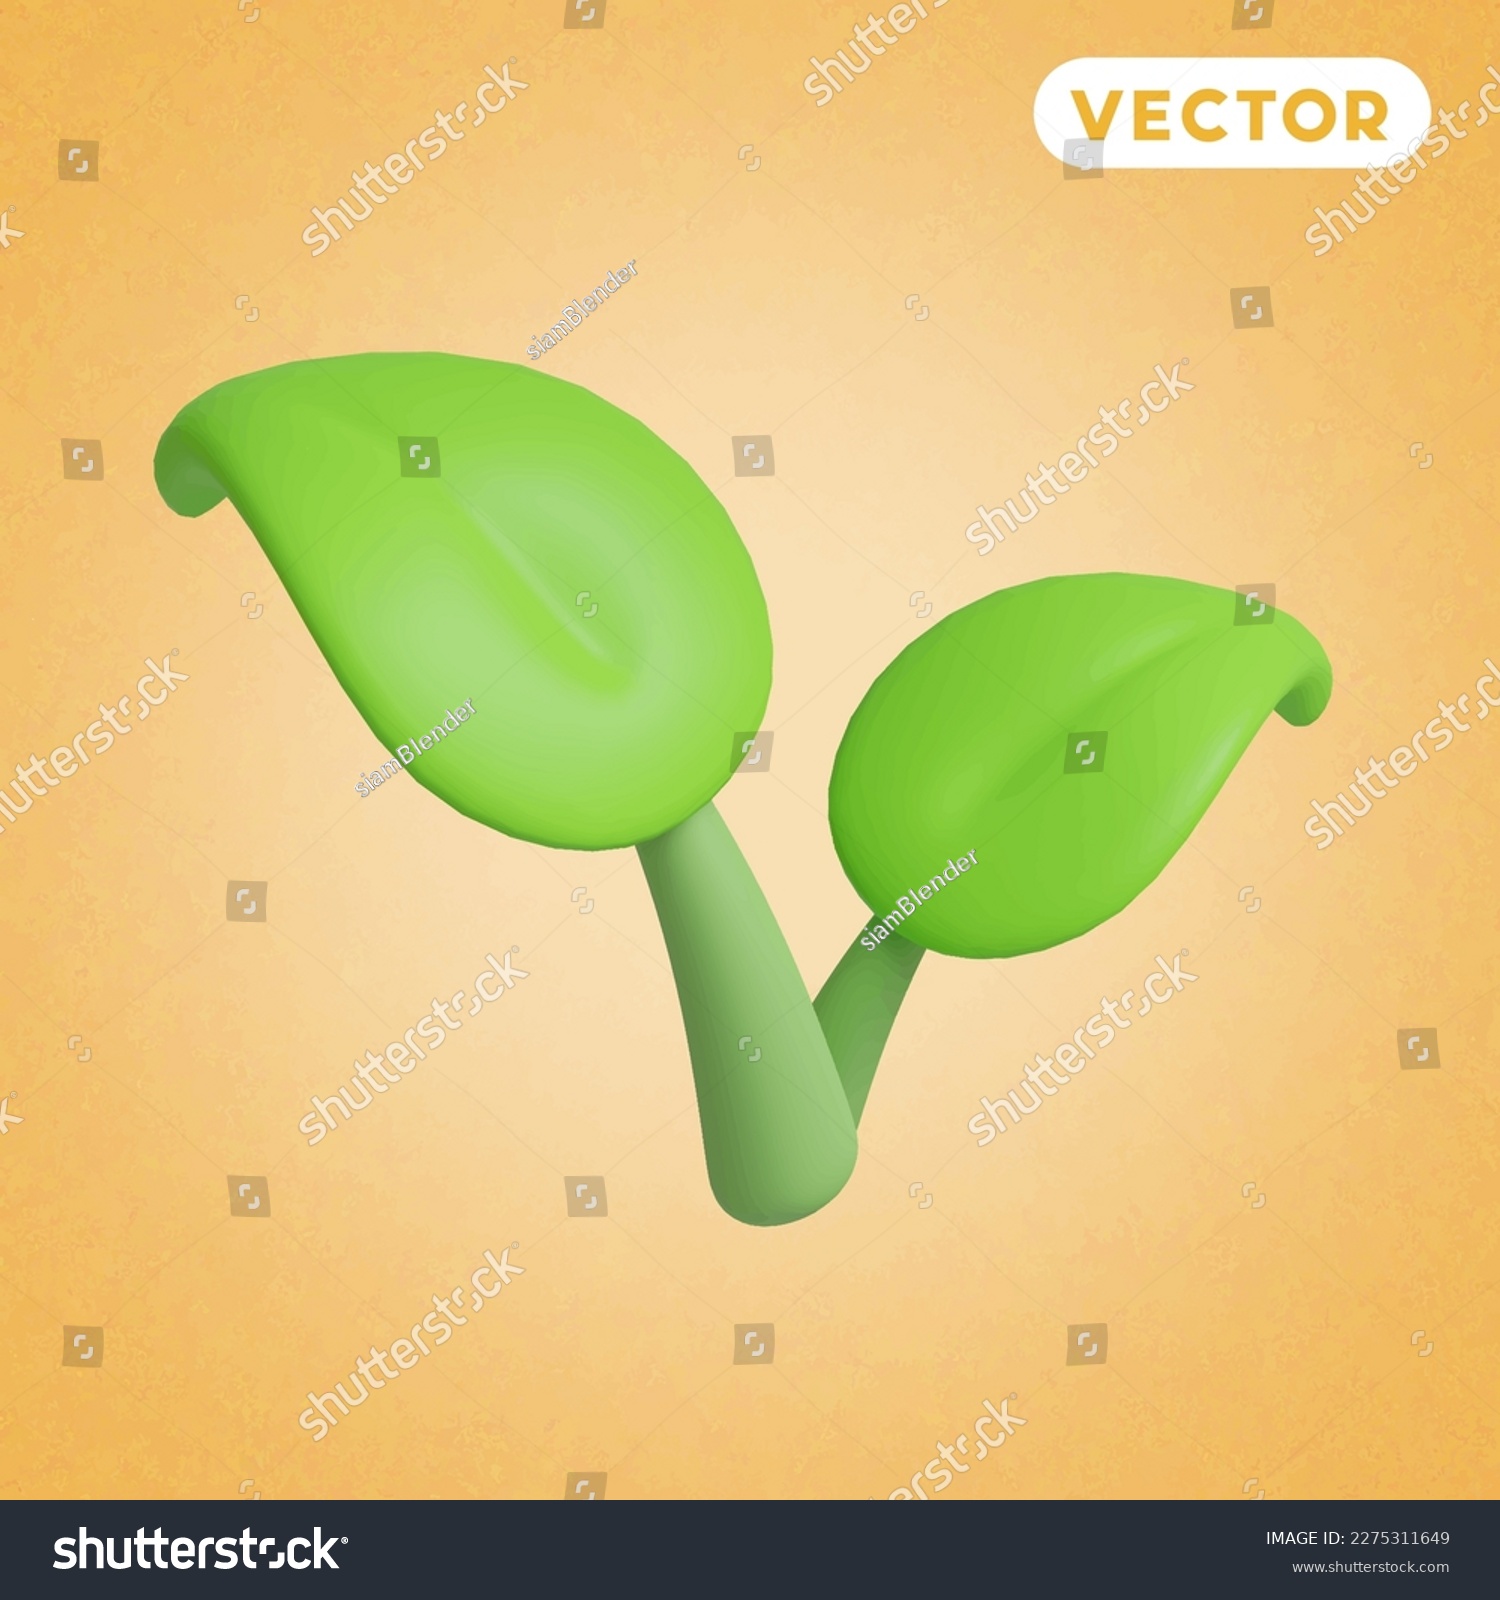 SVG of leaf 3D vector icon set, on a orange background svg